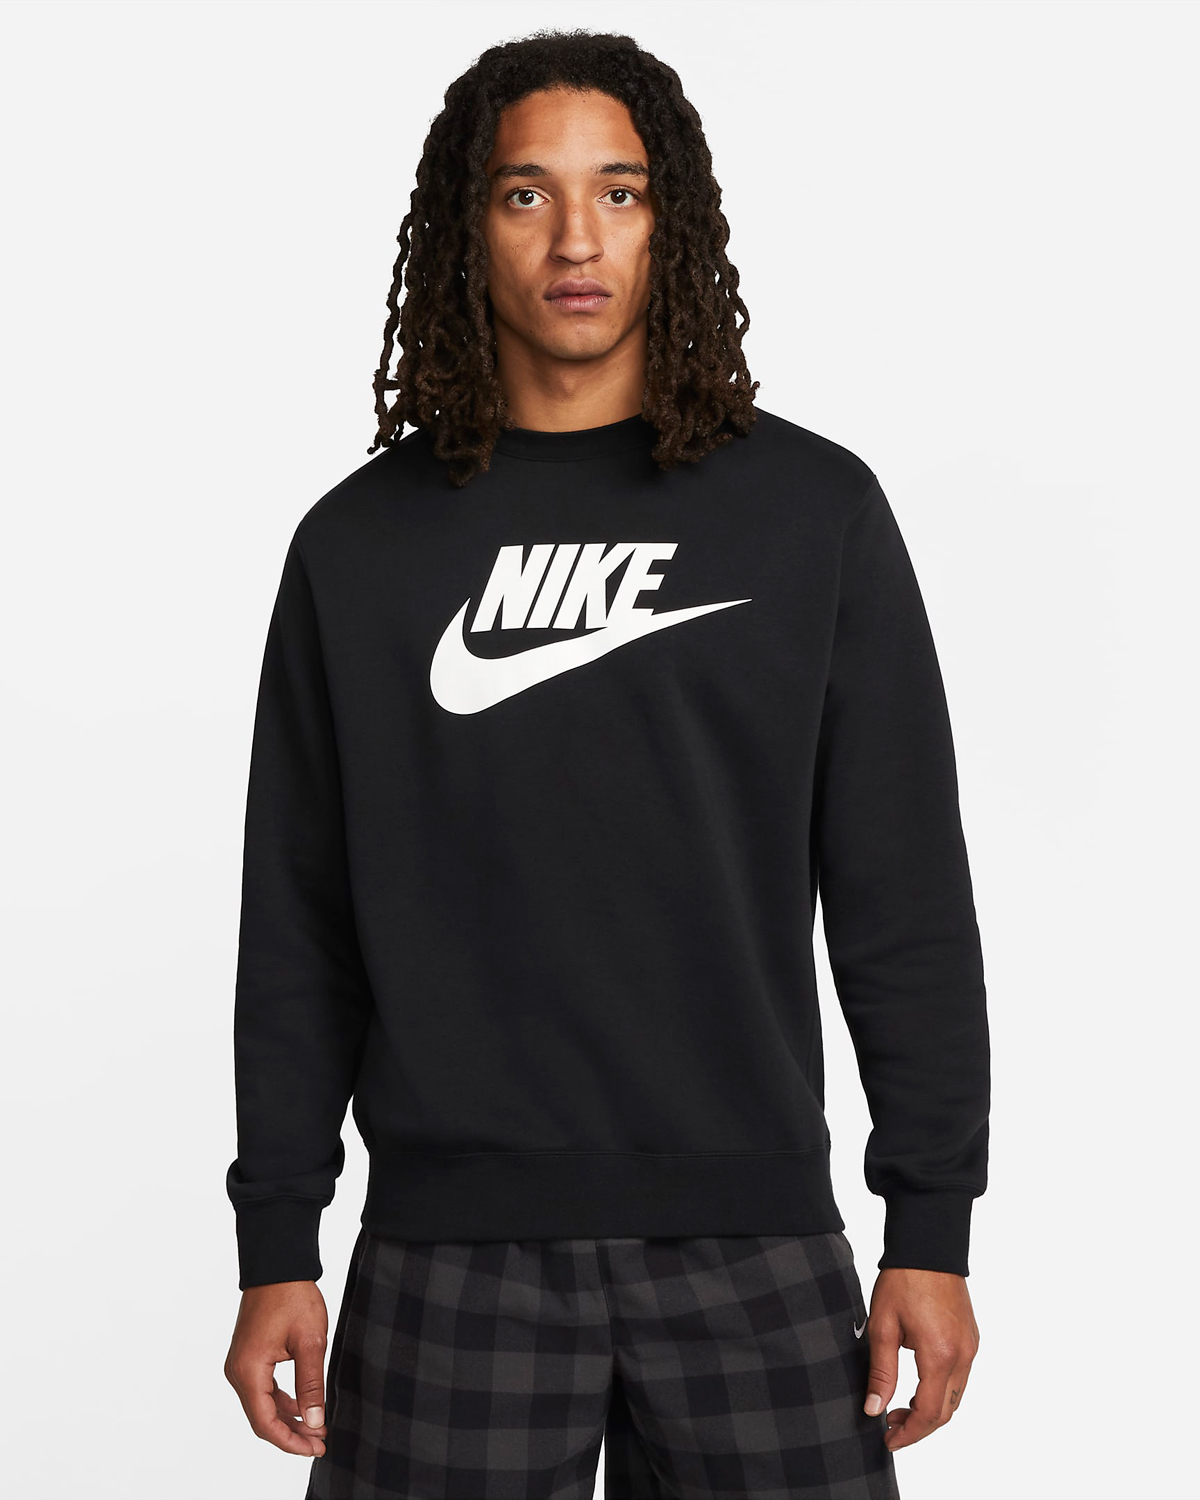 Nike-Club-Fleece-Graphic-Sweatshirt-Black-White